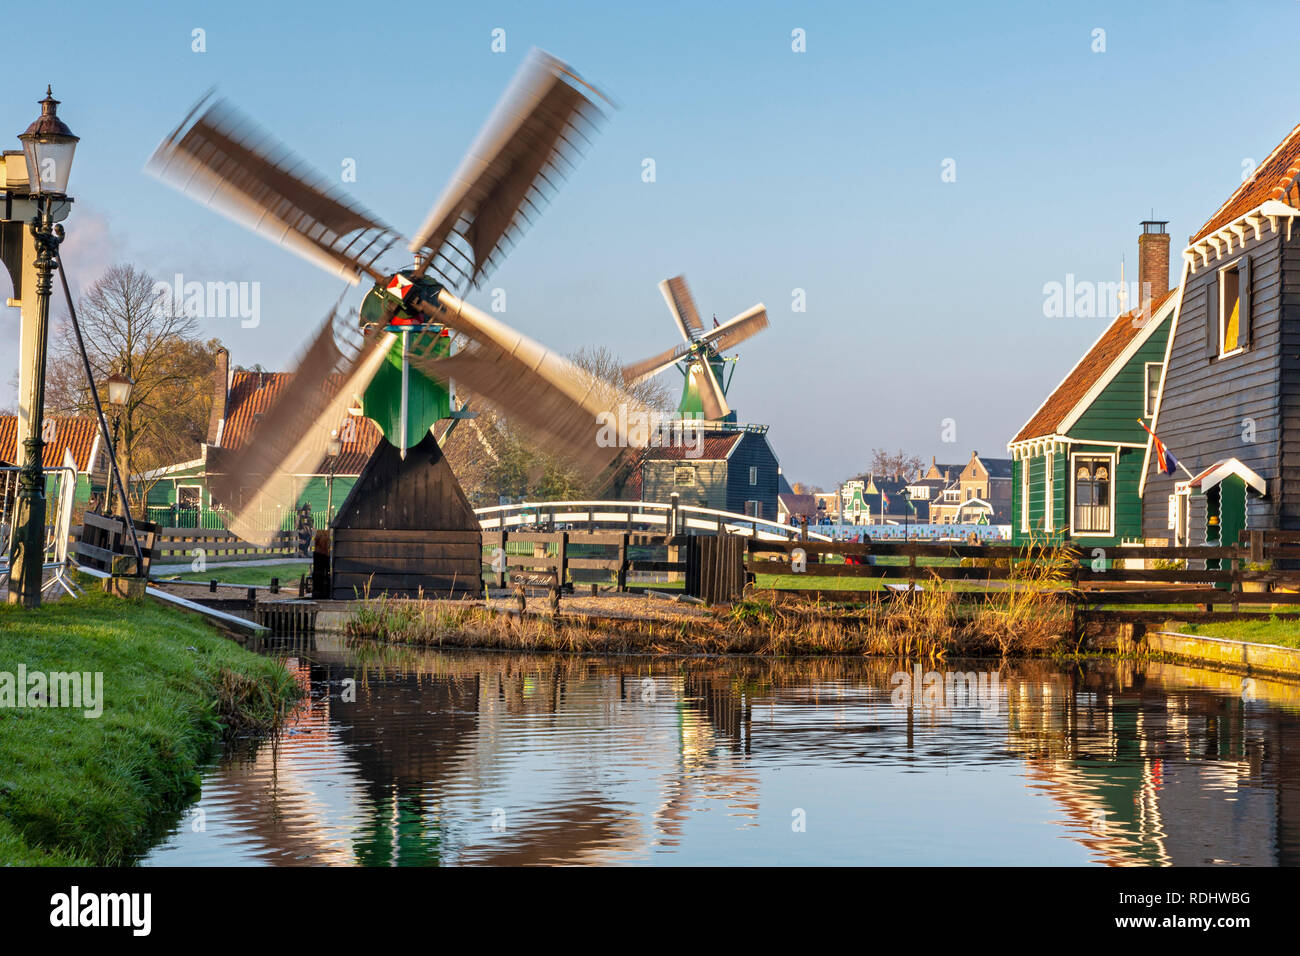 Países Bajos, Zaanse Schans cerca de Zaandam, Open Air atracción turística con molinos de viento y casas, principalmente desde el siglo 17 y 18. Foto de stock